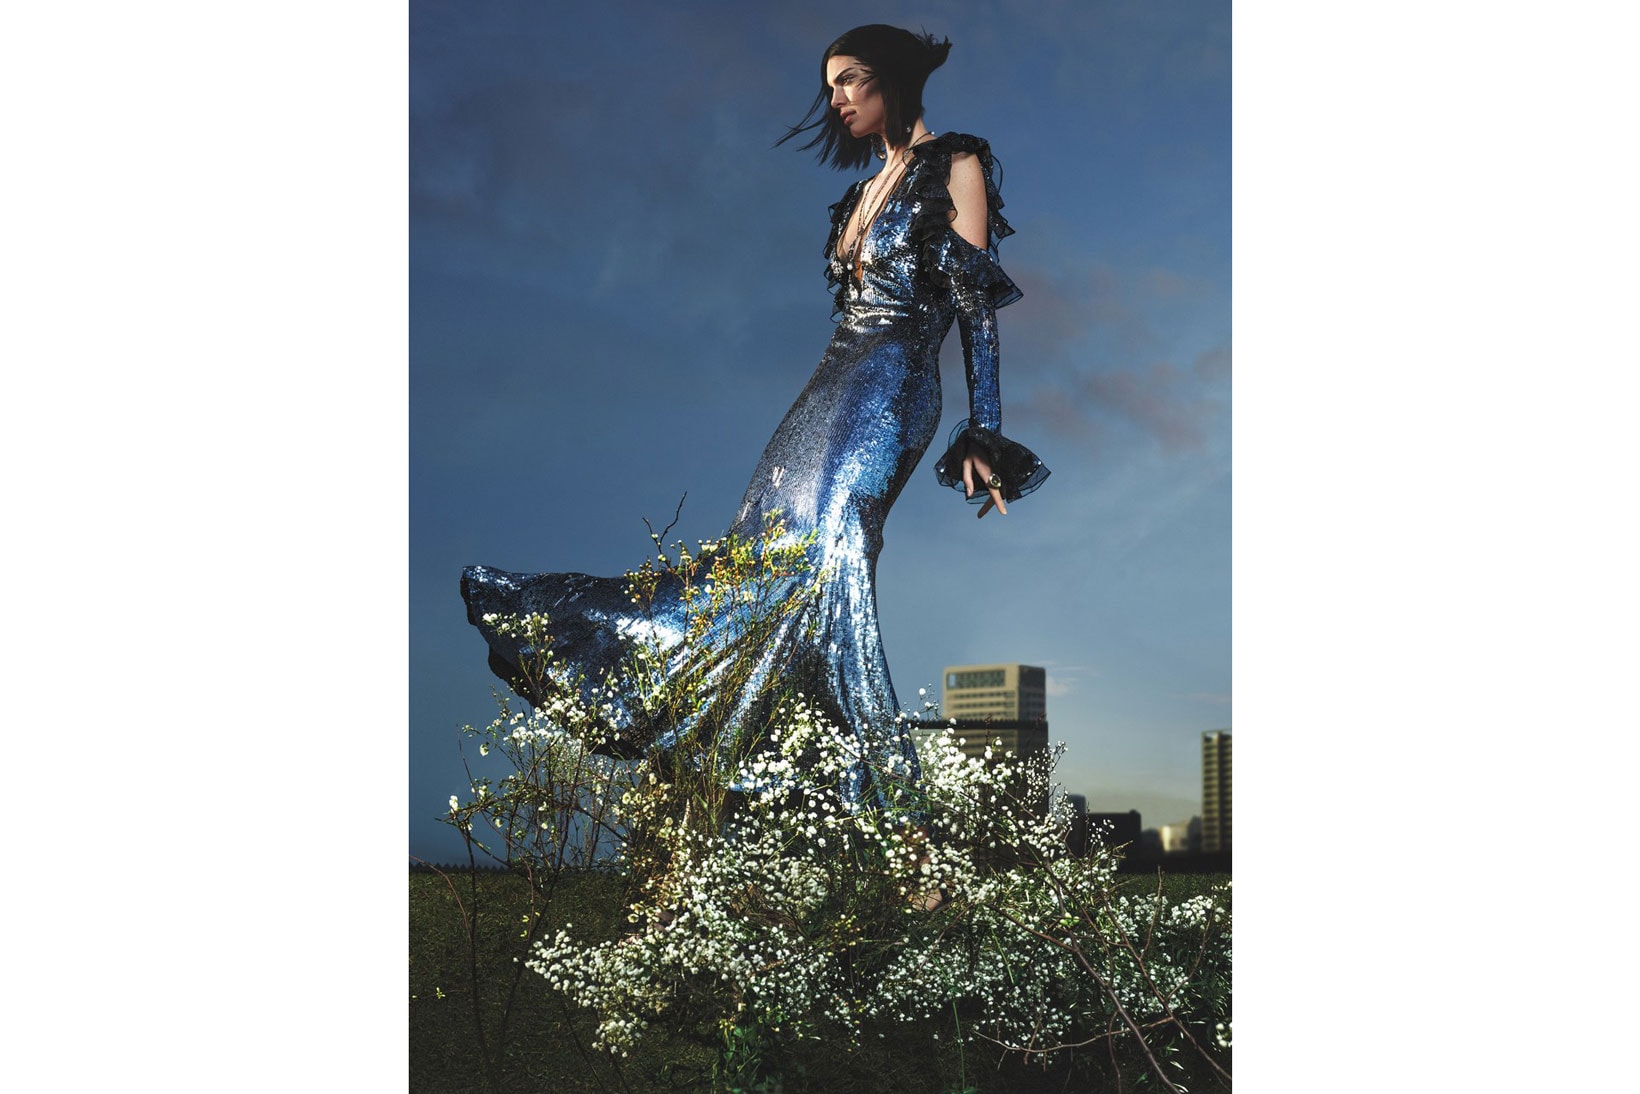 Kylie Jenner models vintage-inspired Gucci dress for Vogue spread